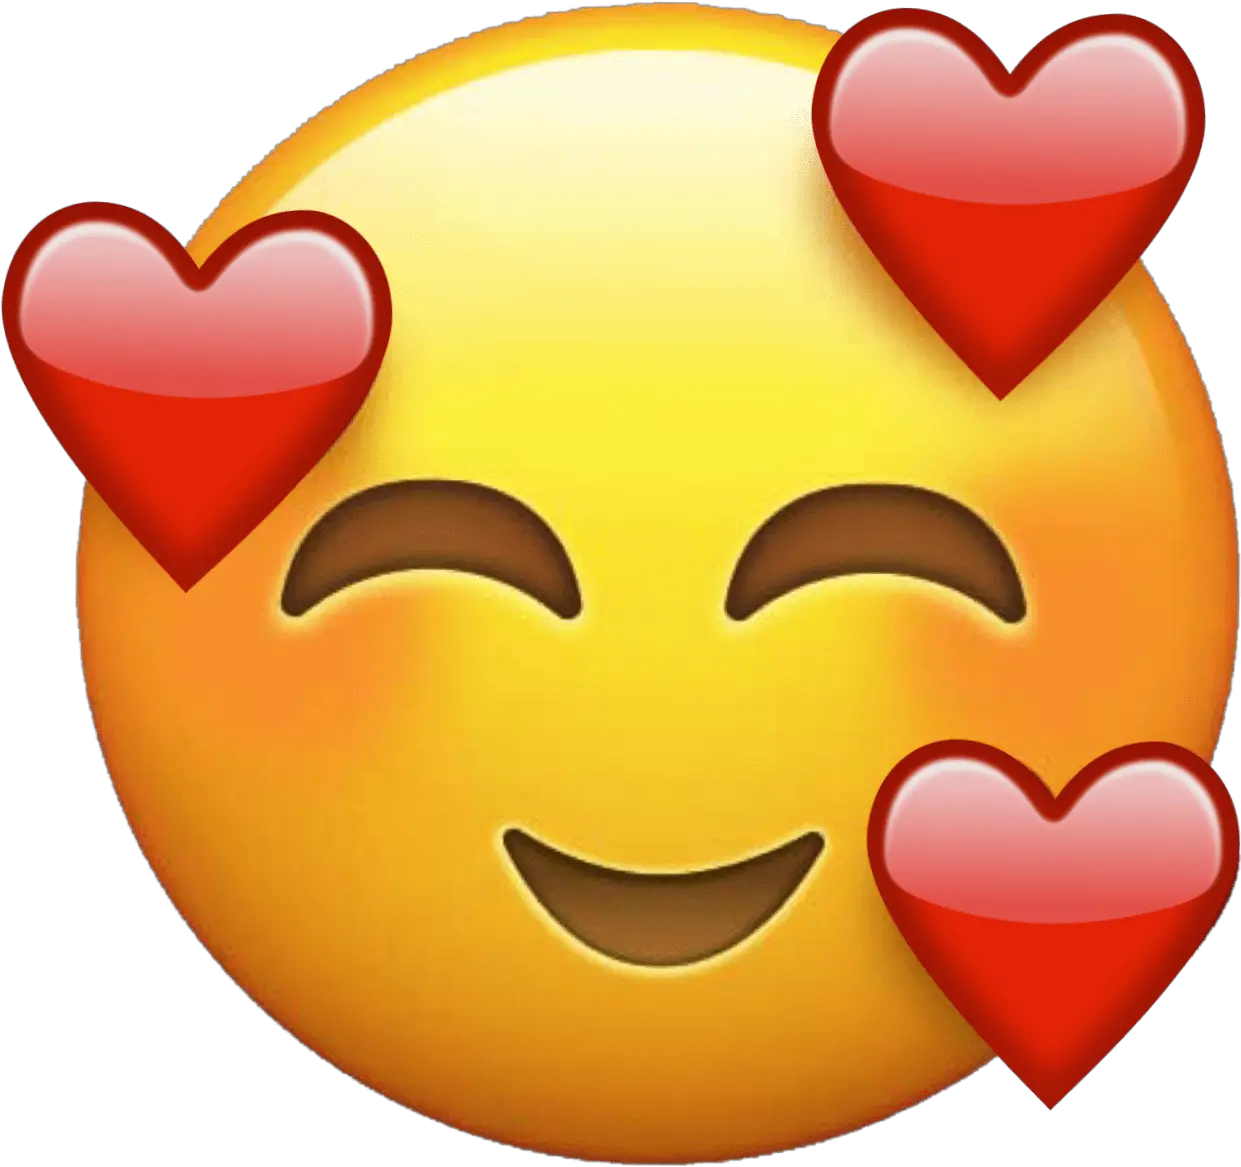 Sad Smiley Face Love Emoji Dp Novocomtop Love Emoticon Png Emoji Icon Level 66